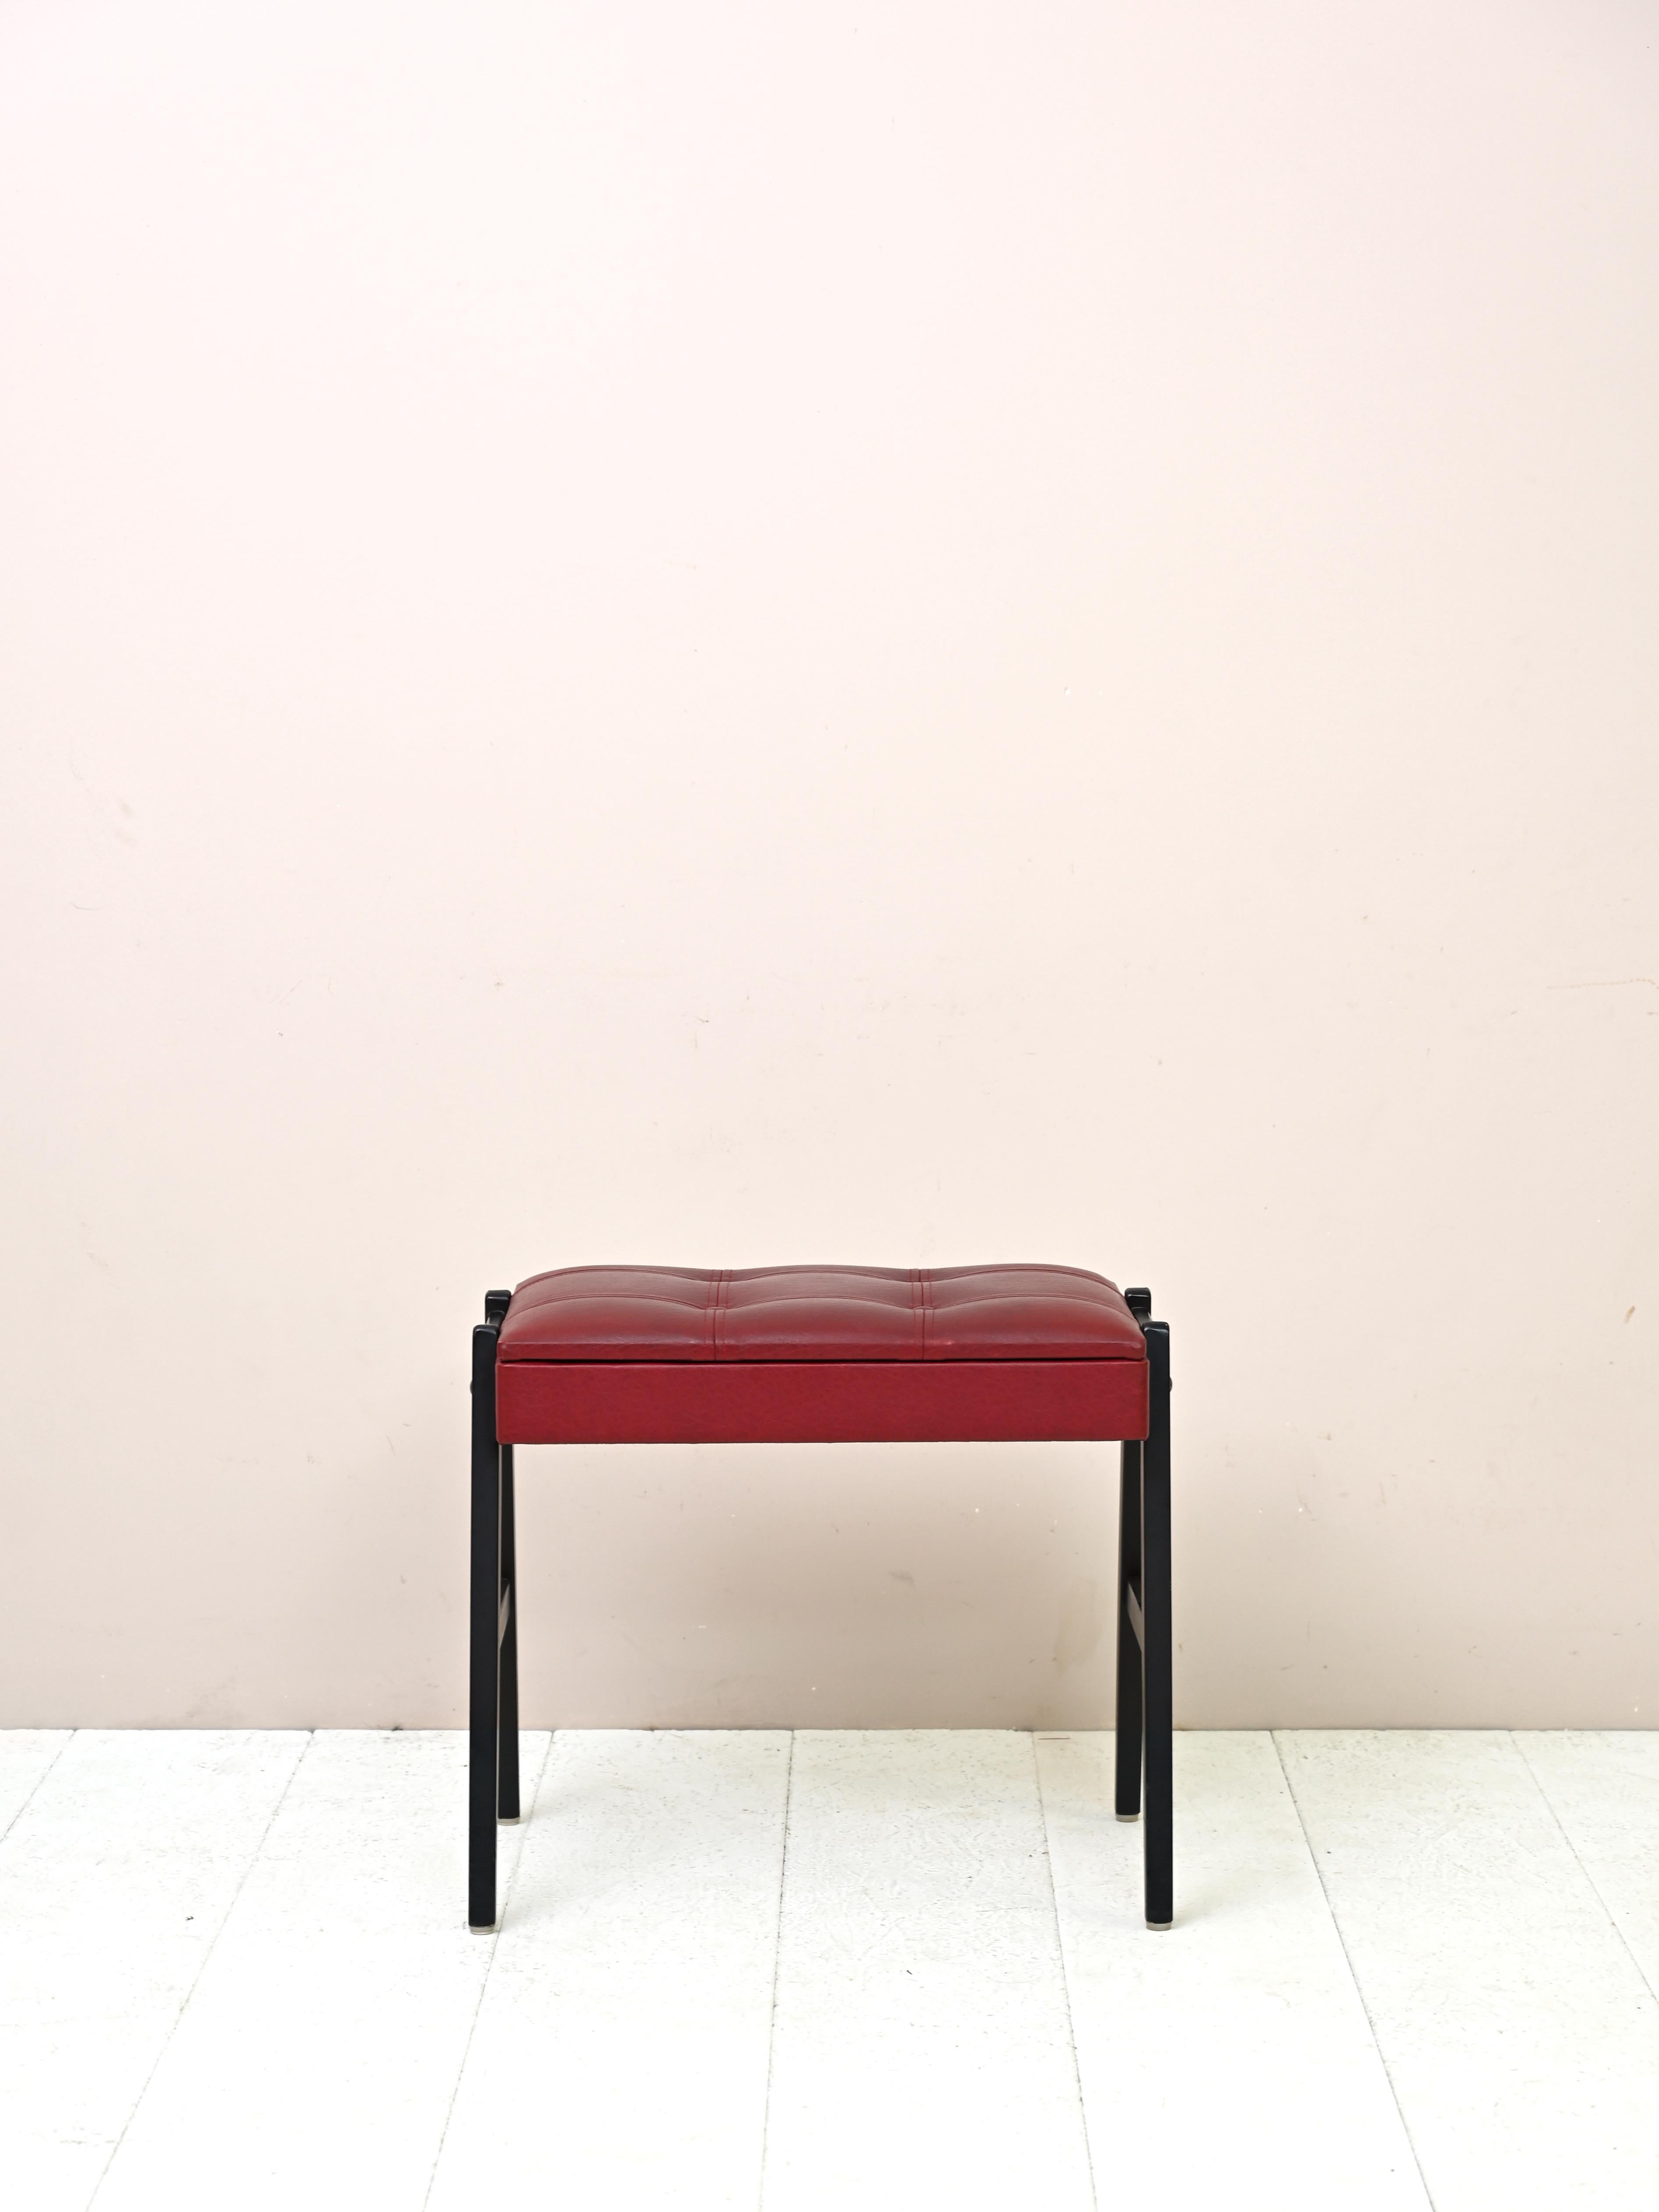 Skandinavischer Hocker aus Holz und Leder
Praktischer originaler Fußhocker aus den 1960er Jahren mit Holzgestell und mit Kunstleder bezogener Sitzfläche
rot. Die Holzbeine sind schwarz lackiert. Unter dem Sitz befindet sich ein kleines